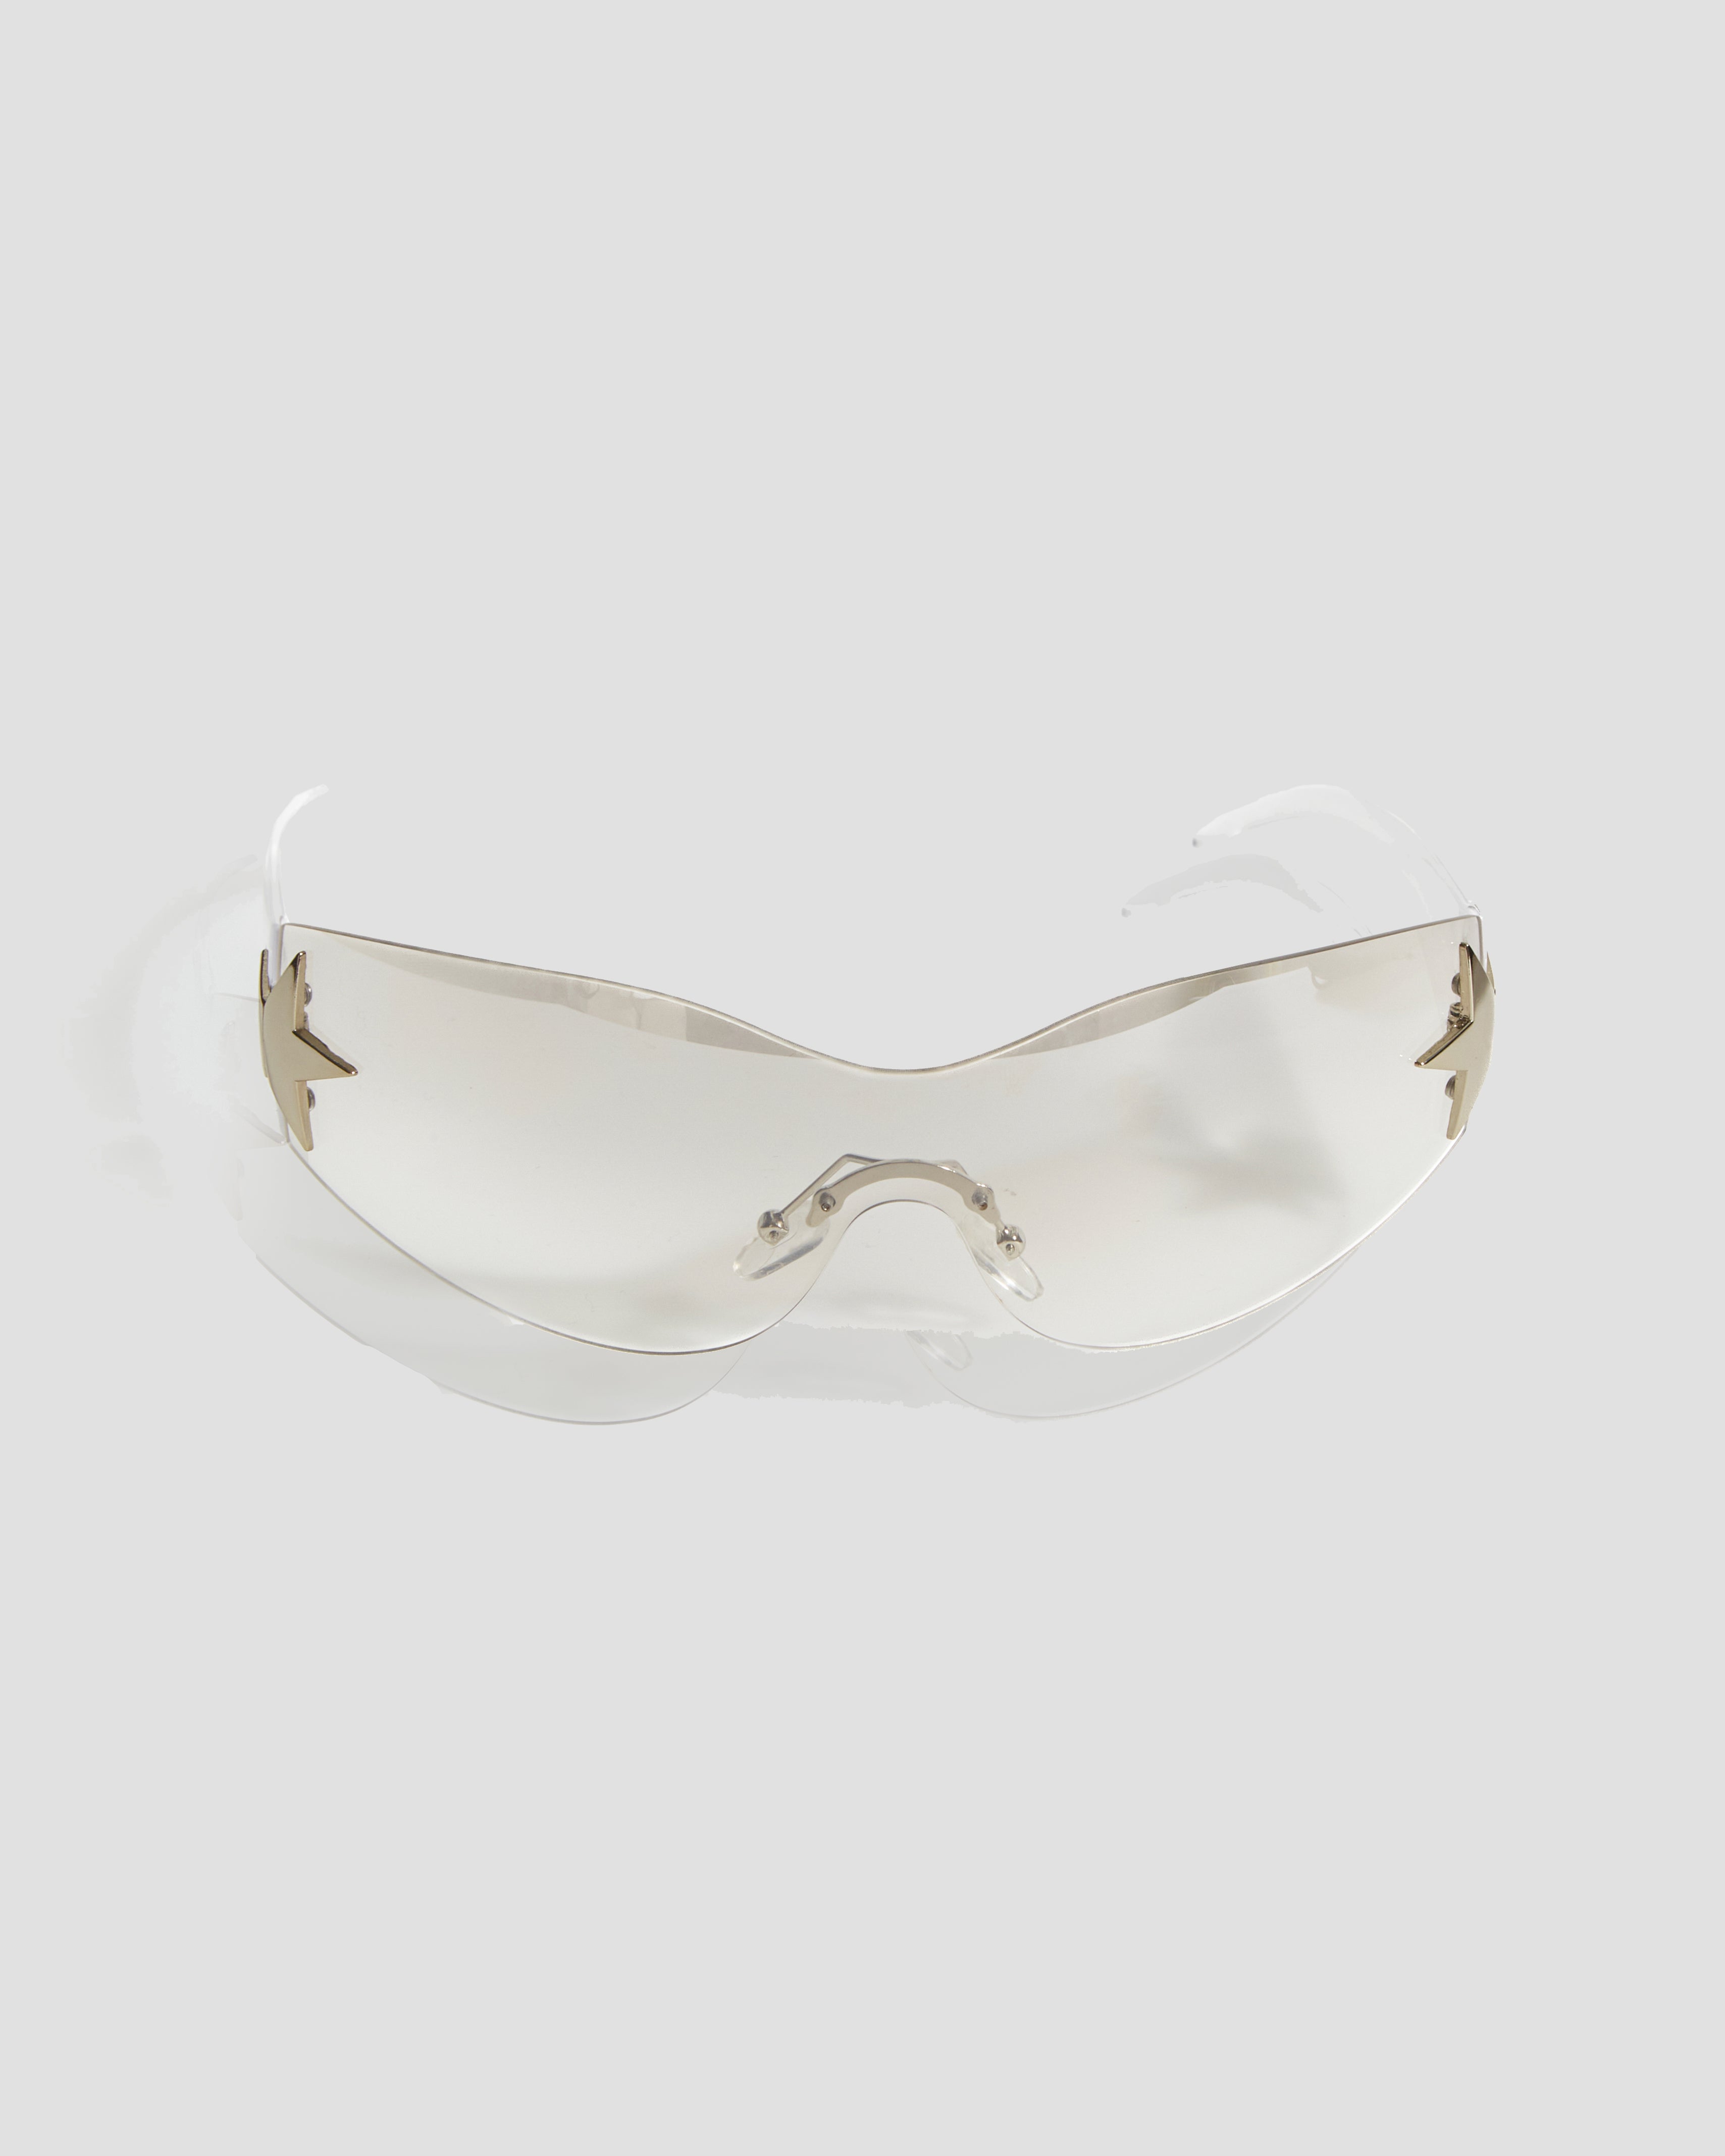 Estelle Frameless Mirror Sunglasses with Stars in White